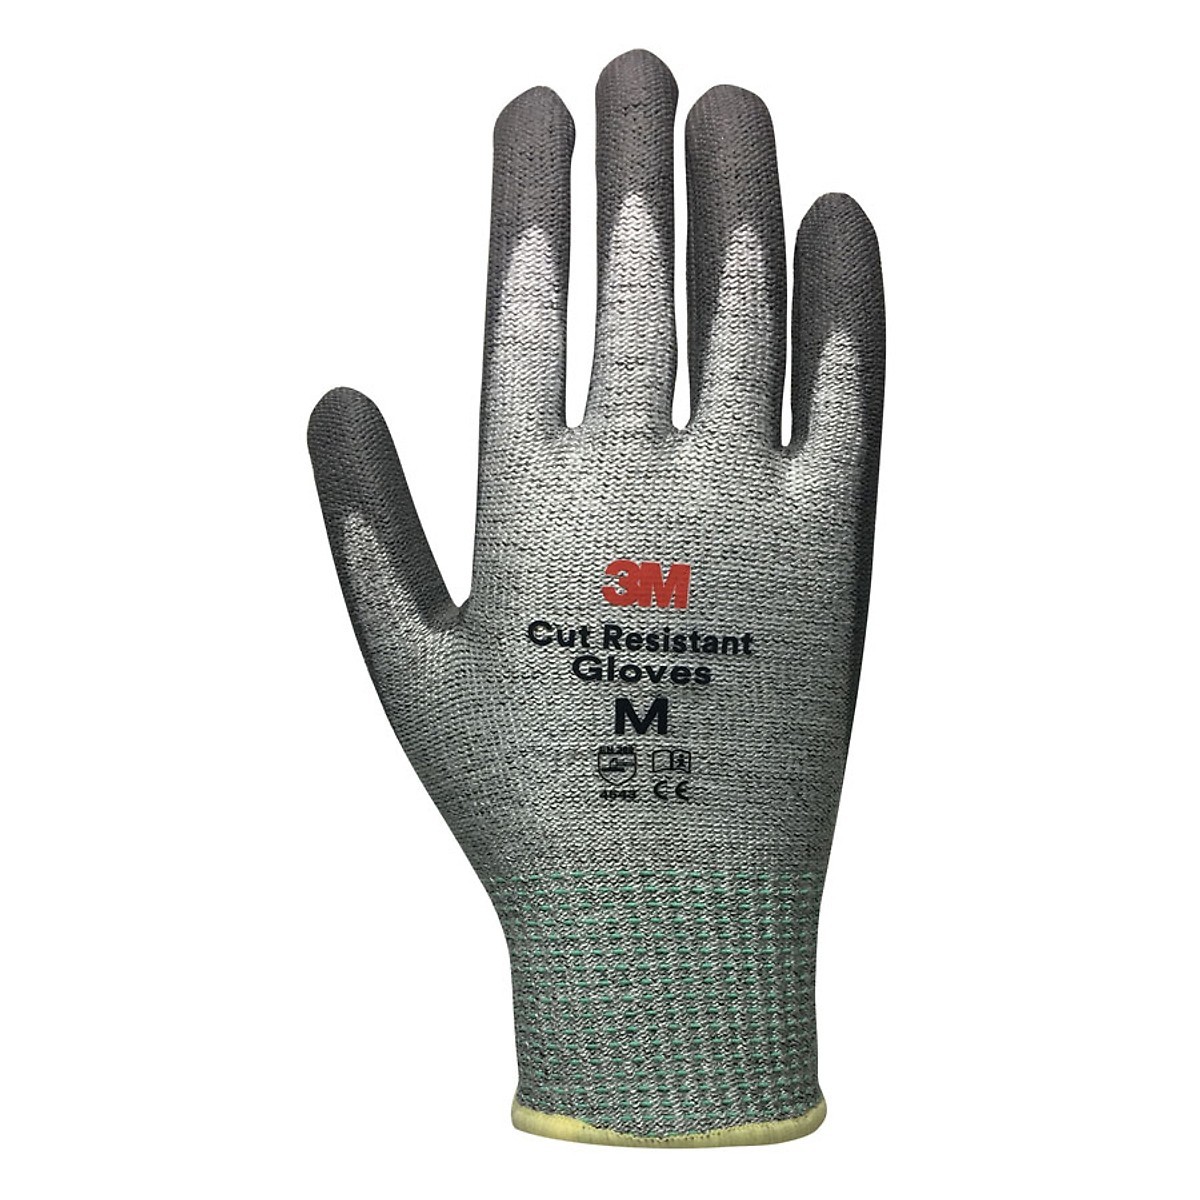 3M Cut Resistant Gloves (ATG-3M-LV3-L)